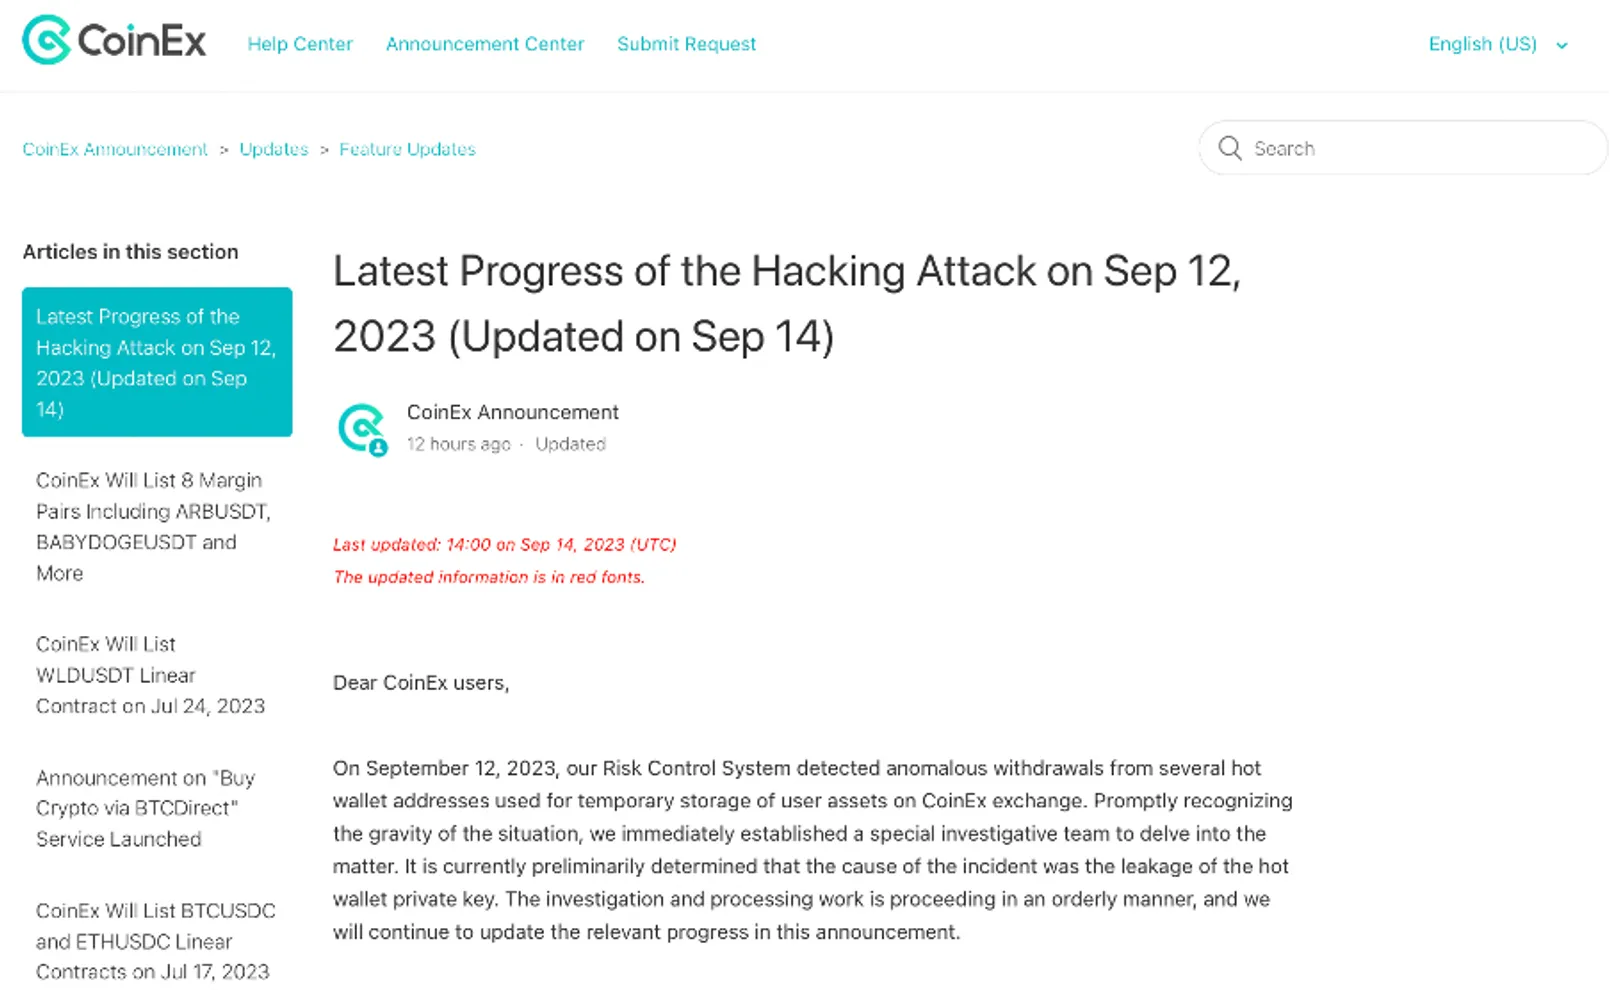 รายงานความคืบหน้าล่าสุดของการโจมตีด้วยการแฮ็กเมื่อวันที่ 12 กันยายน 2023 (อัปเดตเมื่อวันที่ 15 กันยายน)